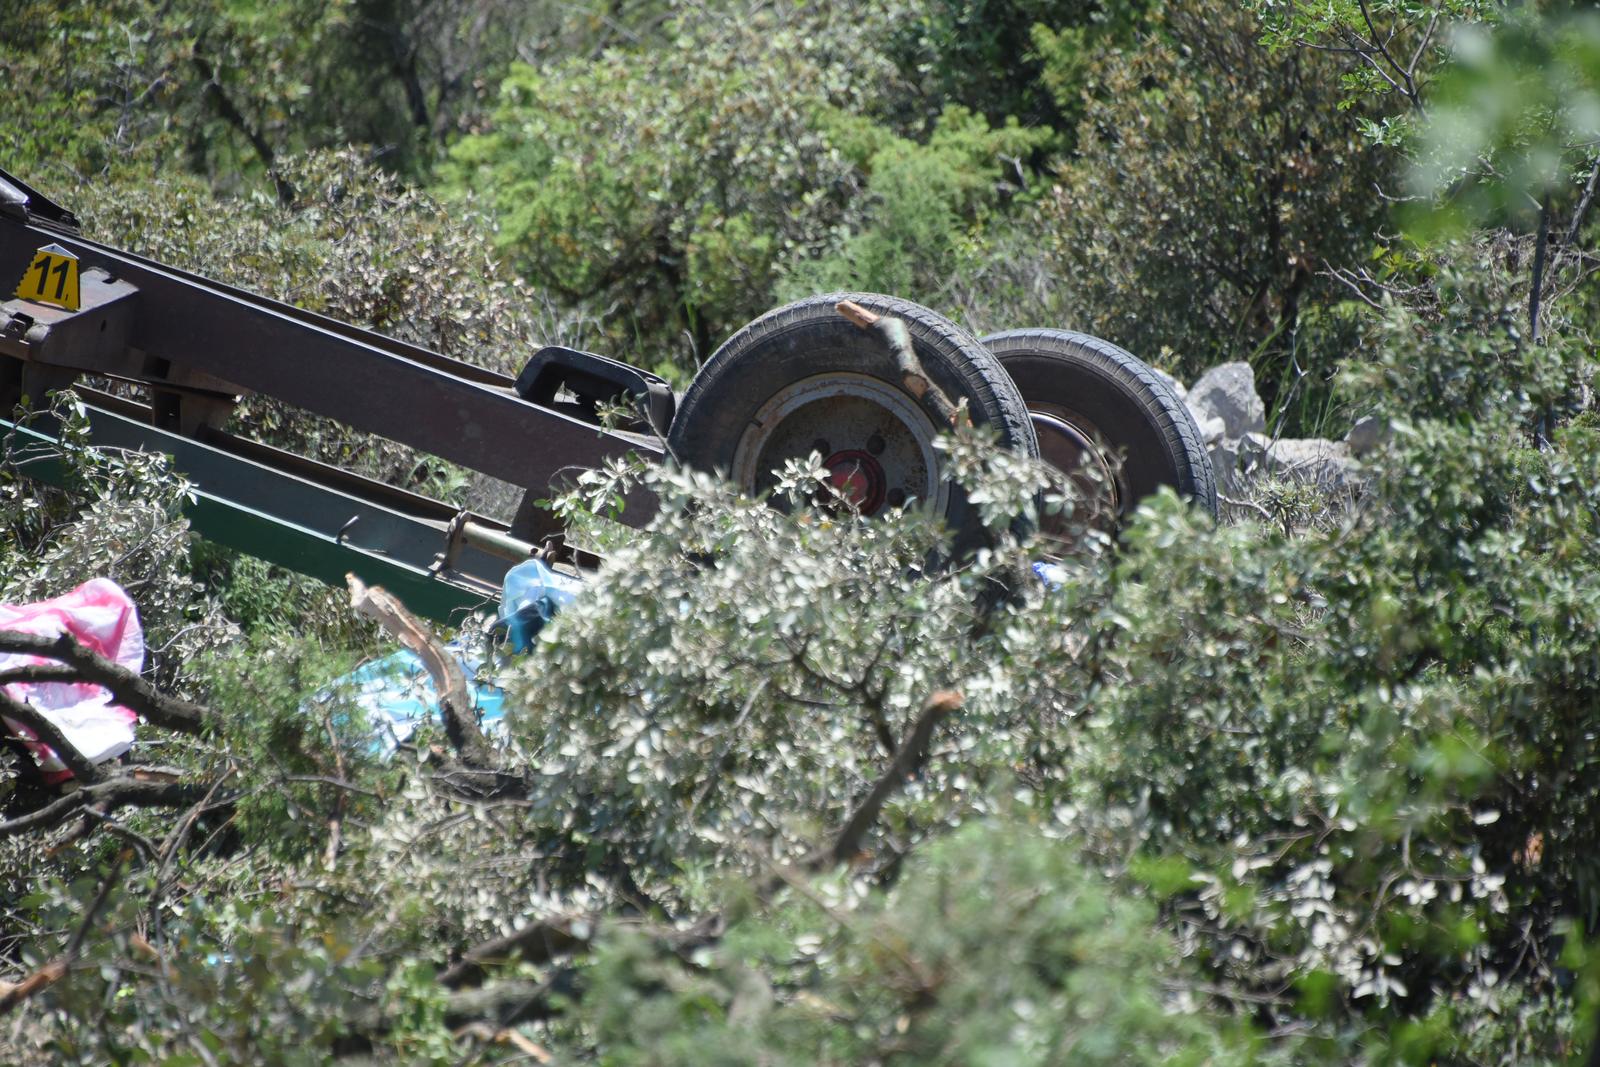 26.05.2023., Labin - Puka sreca spasila je 20ak labinskih maturanata, koji su se traktorom prevrnuli u provaliju. Photo: Sasa Miljevic/PIXSELL